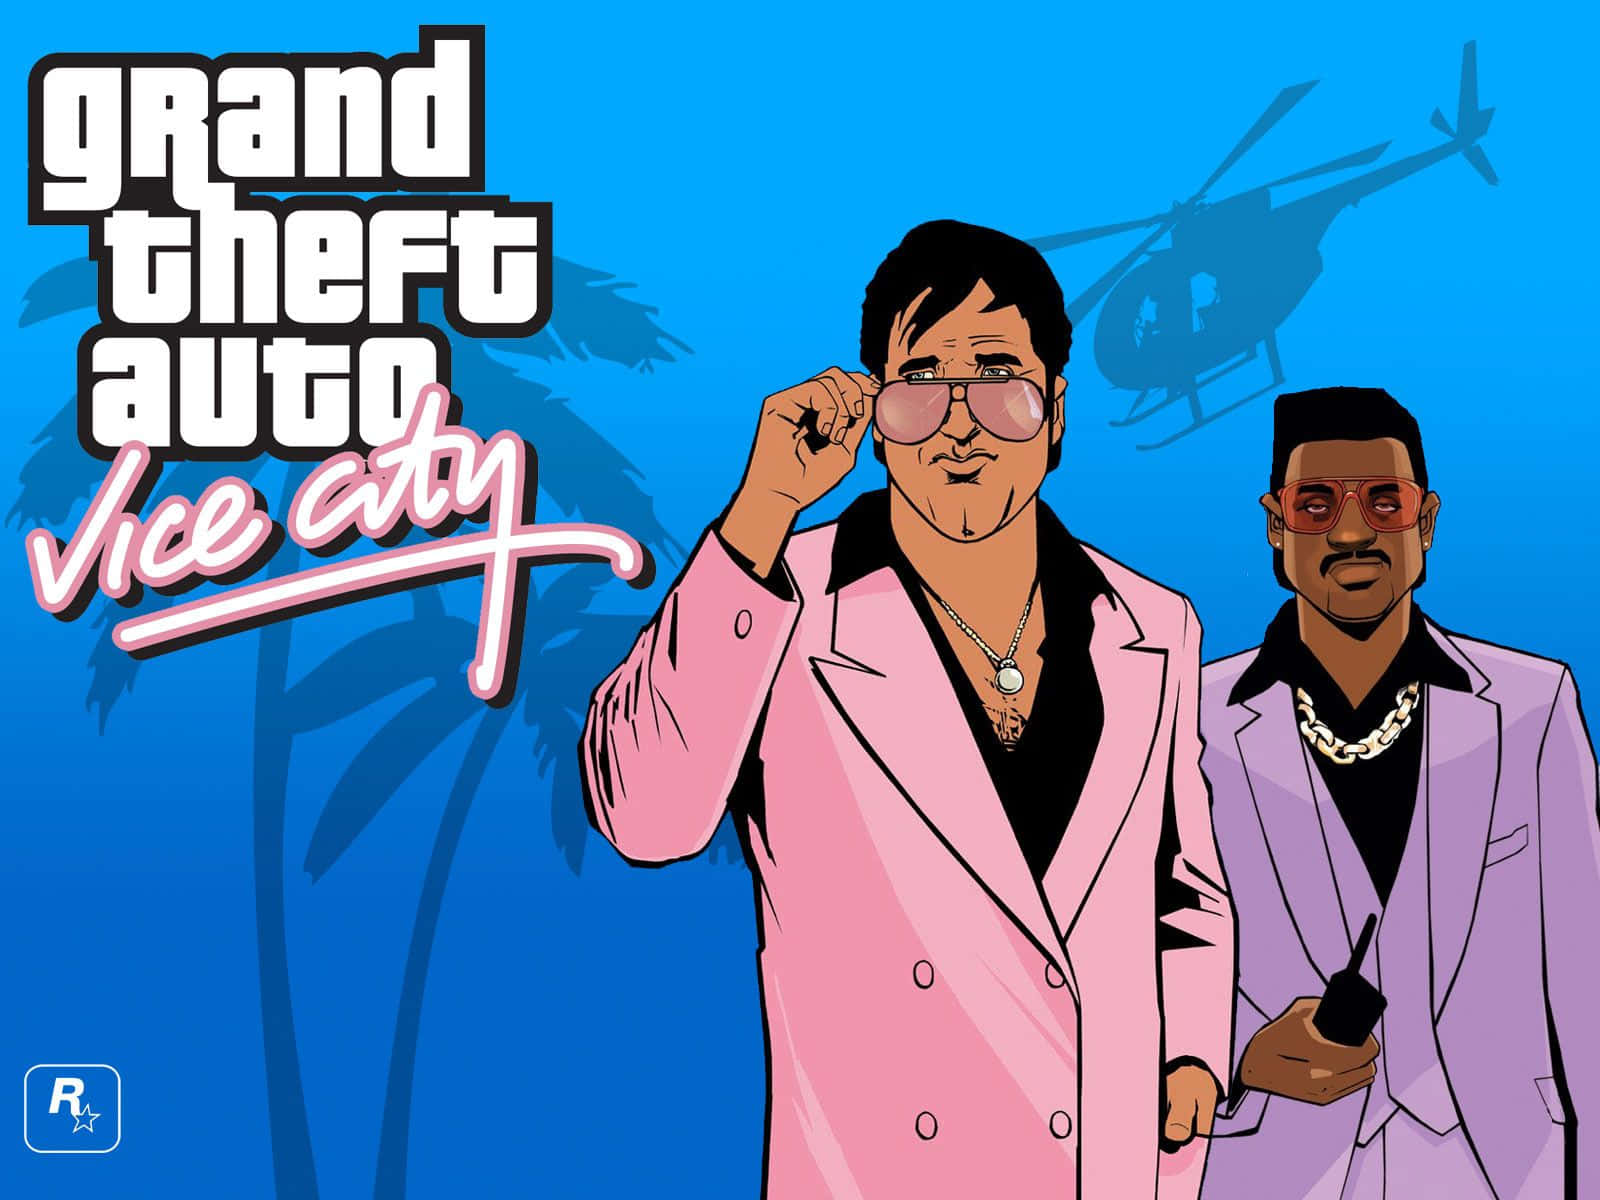 Spielegrand Theft Auto: Vice City Und Erkunde Den Bunten Stadtteil Von Vice City. Wallpaper